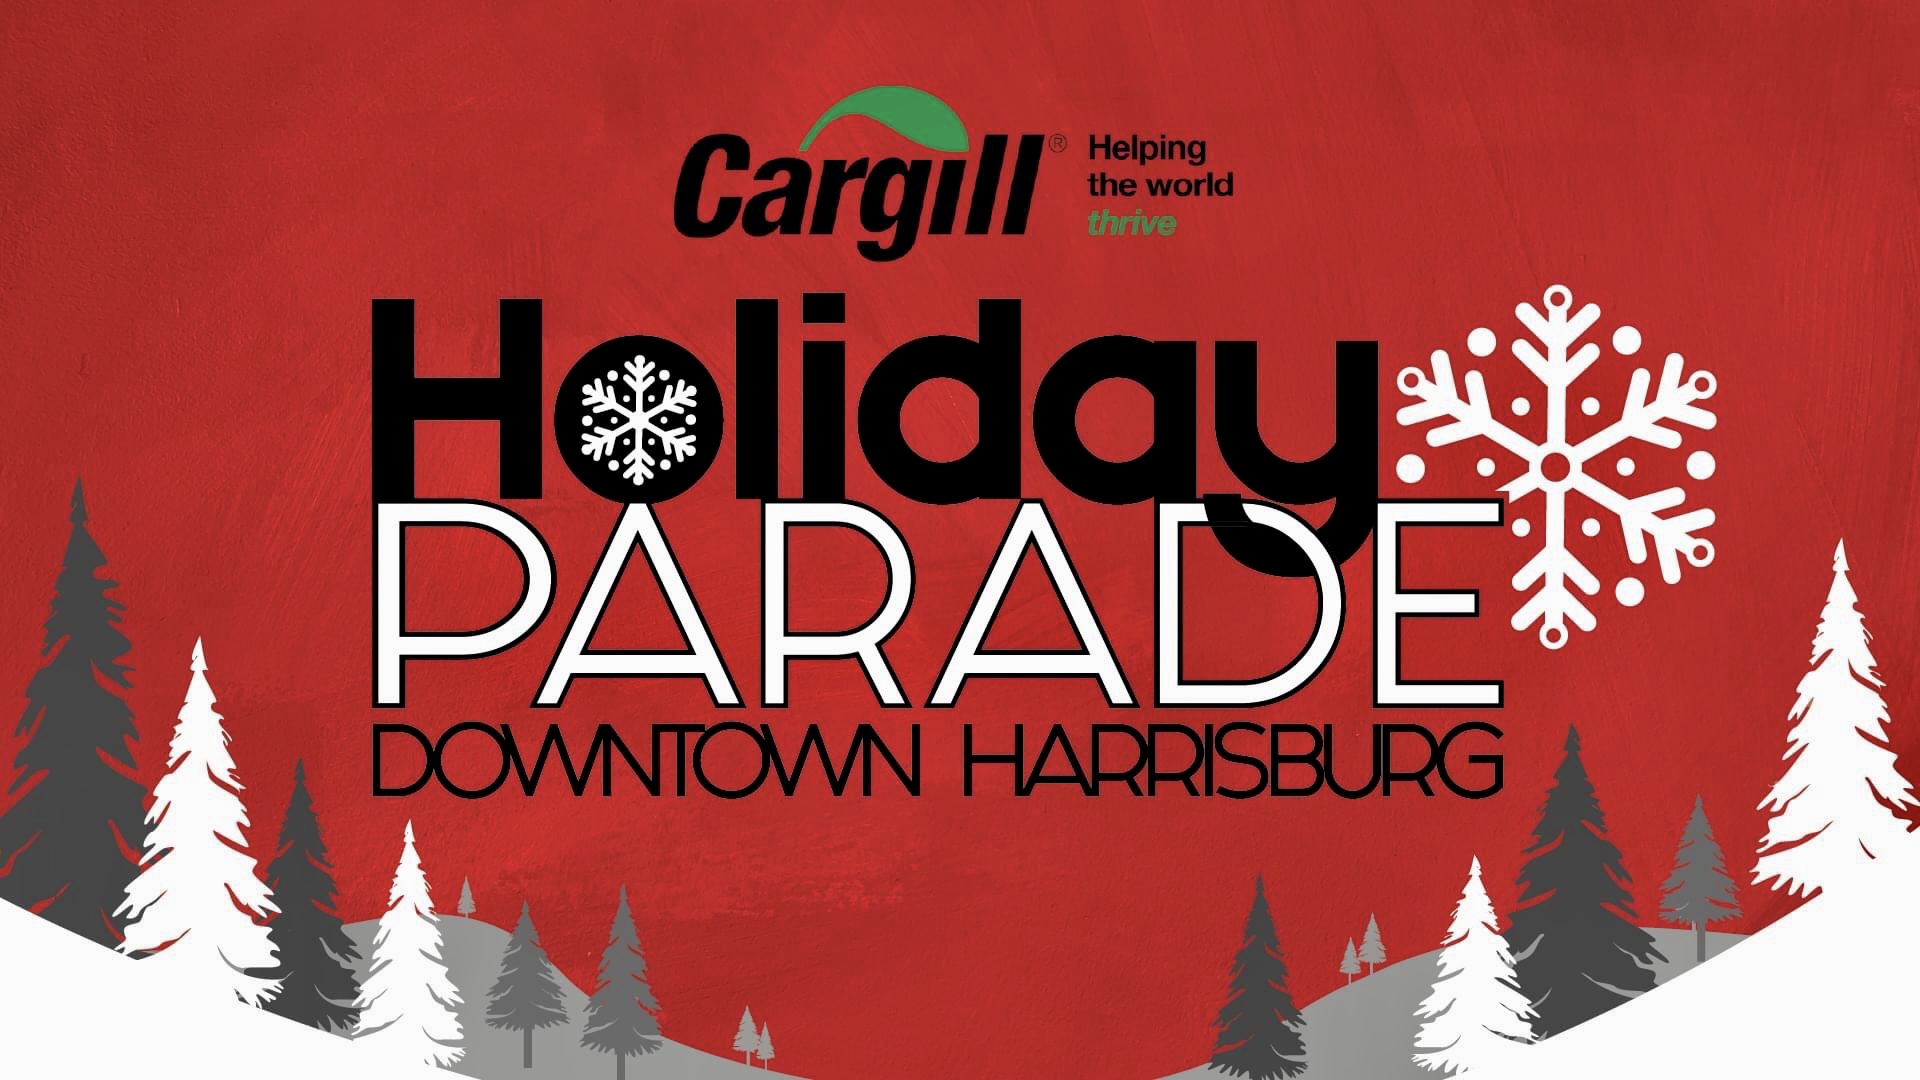 Downtown Harrisburg’s Holiday Parade November 19 SHIP SAVES